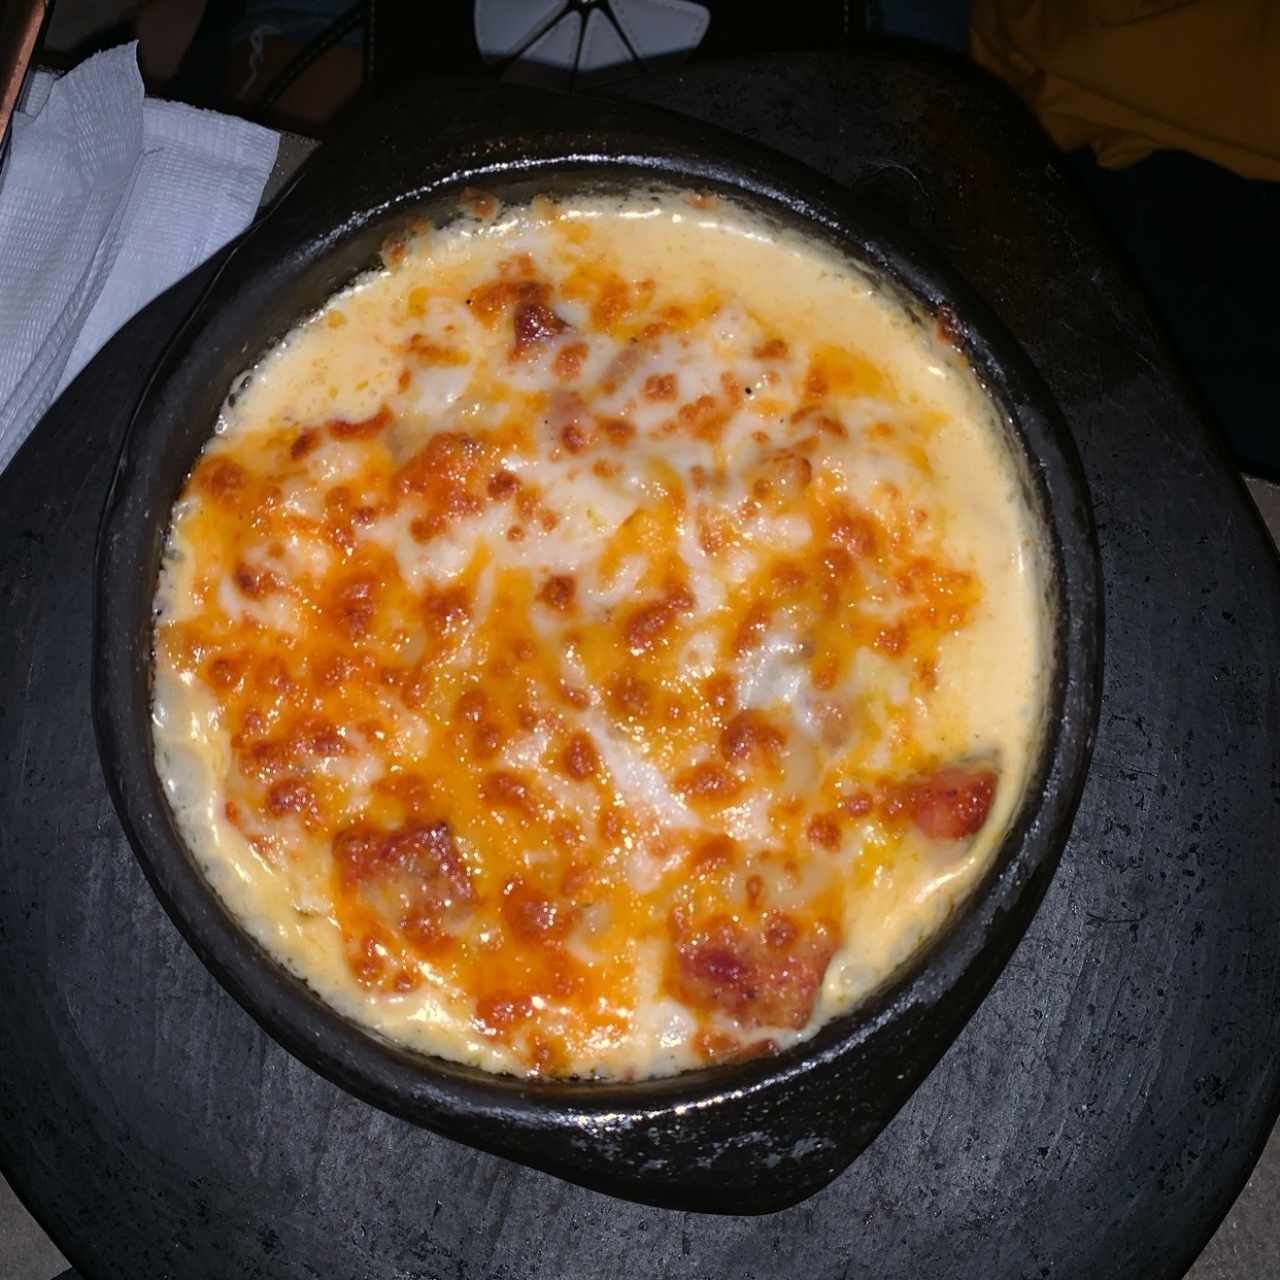 mac n cheese